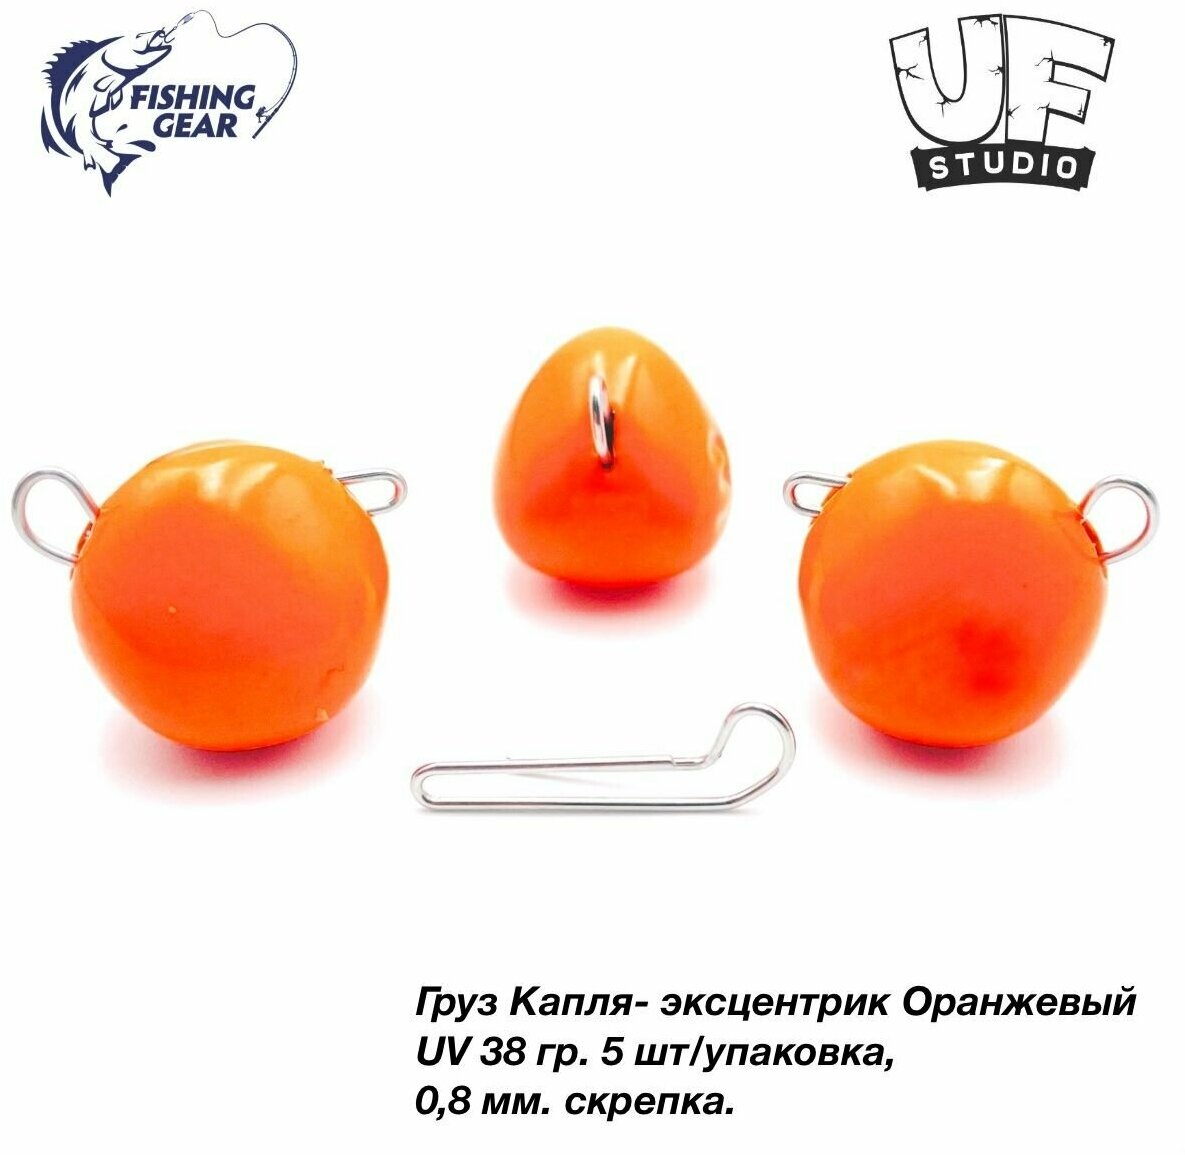 Груз Капля-эксцентрик 38 гр. (5шт) UF-STUDIO оранжевый UV (светится в ультрафиолете)